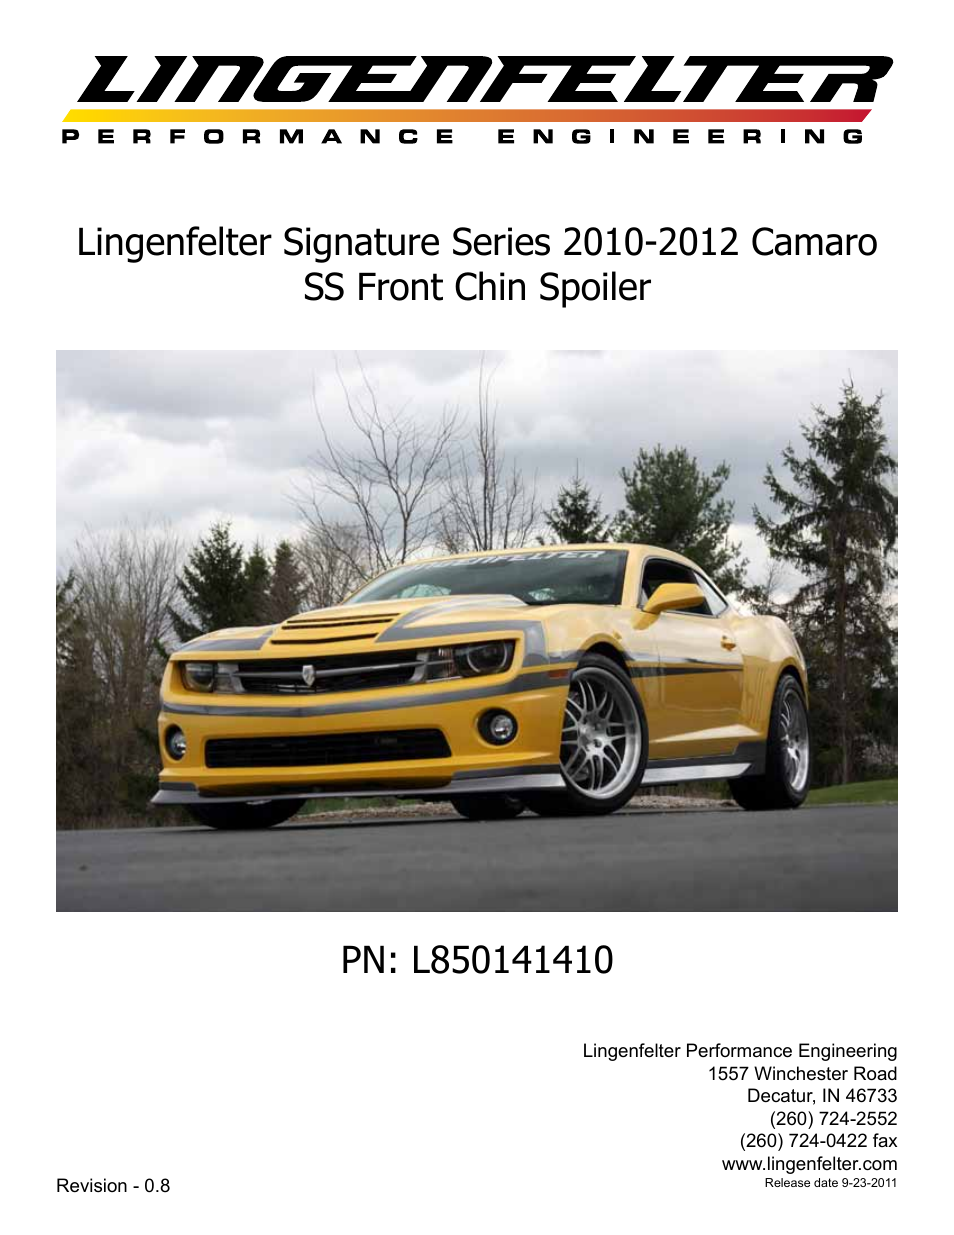 L850141410 Camaro Front Chin Spoiler v0.8